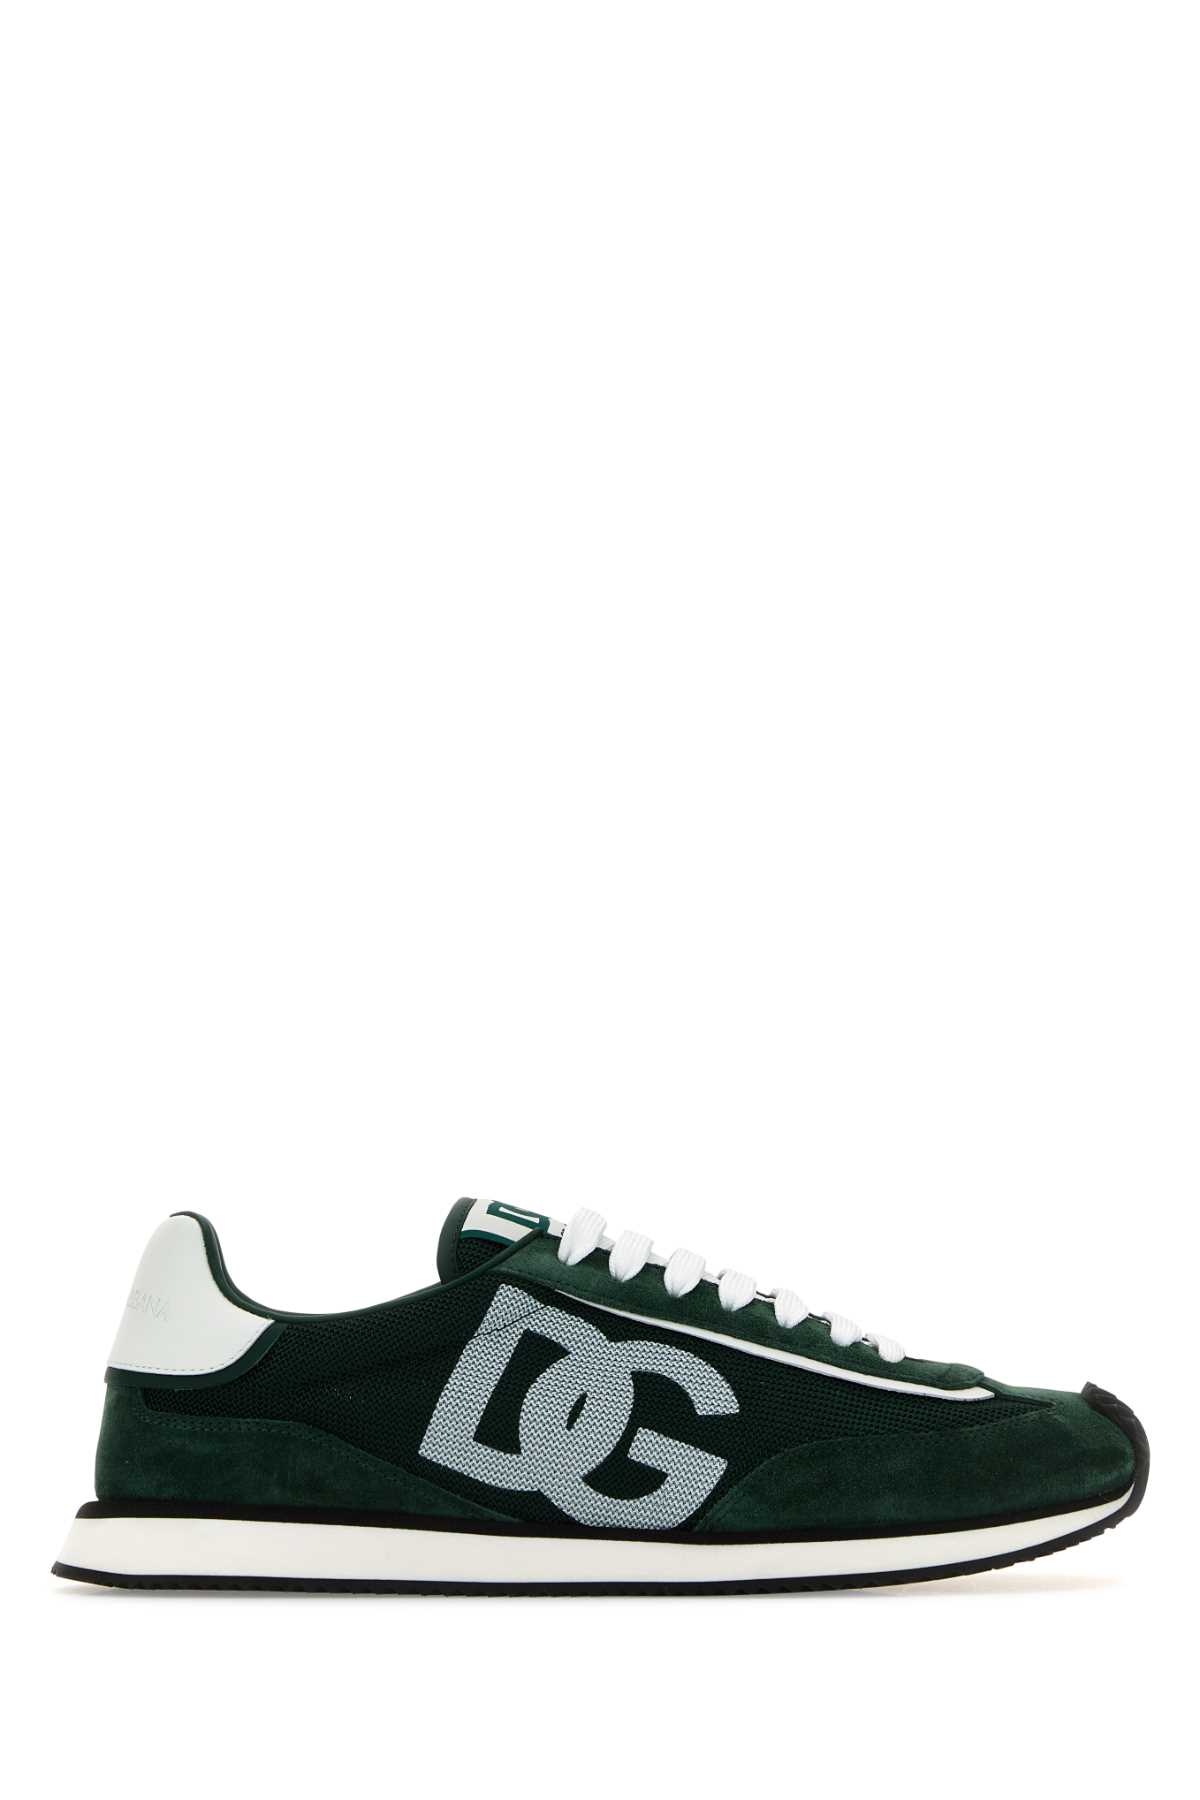 Dolce & Gabbana Bottle Green Suede And Mesh Dg Aria Sneakers In Darkgreenforestgreenemeraldwhite